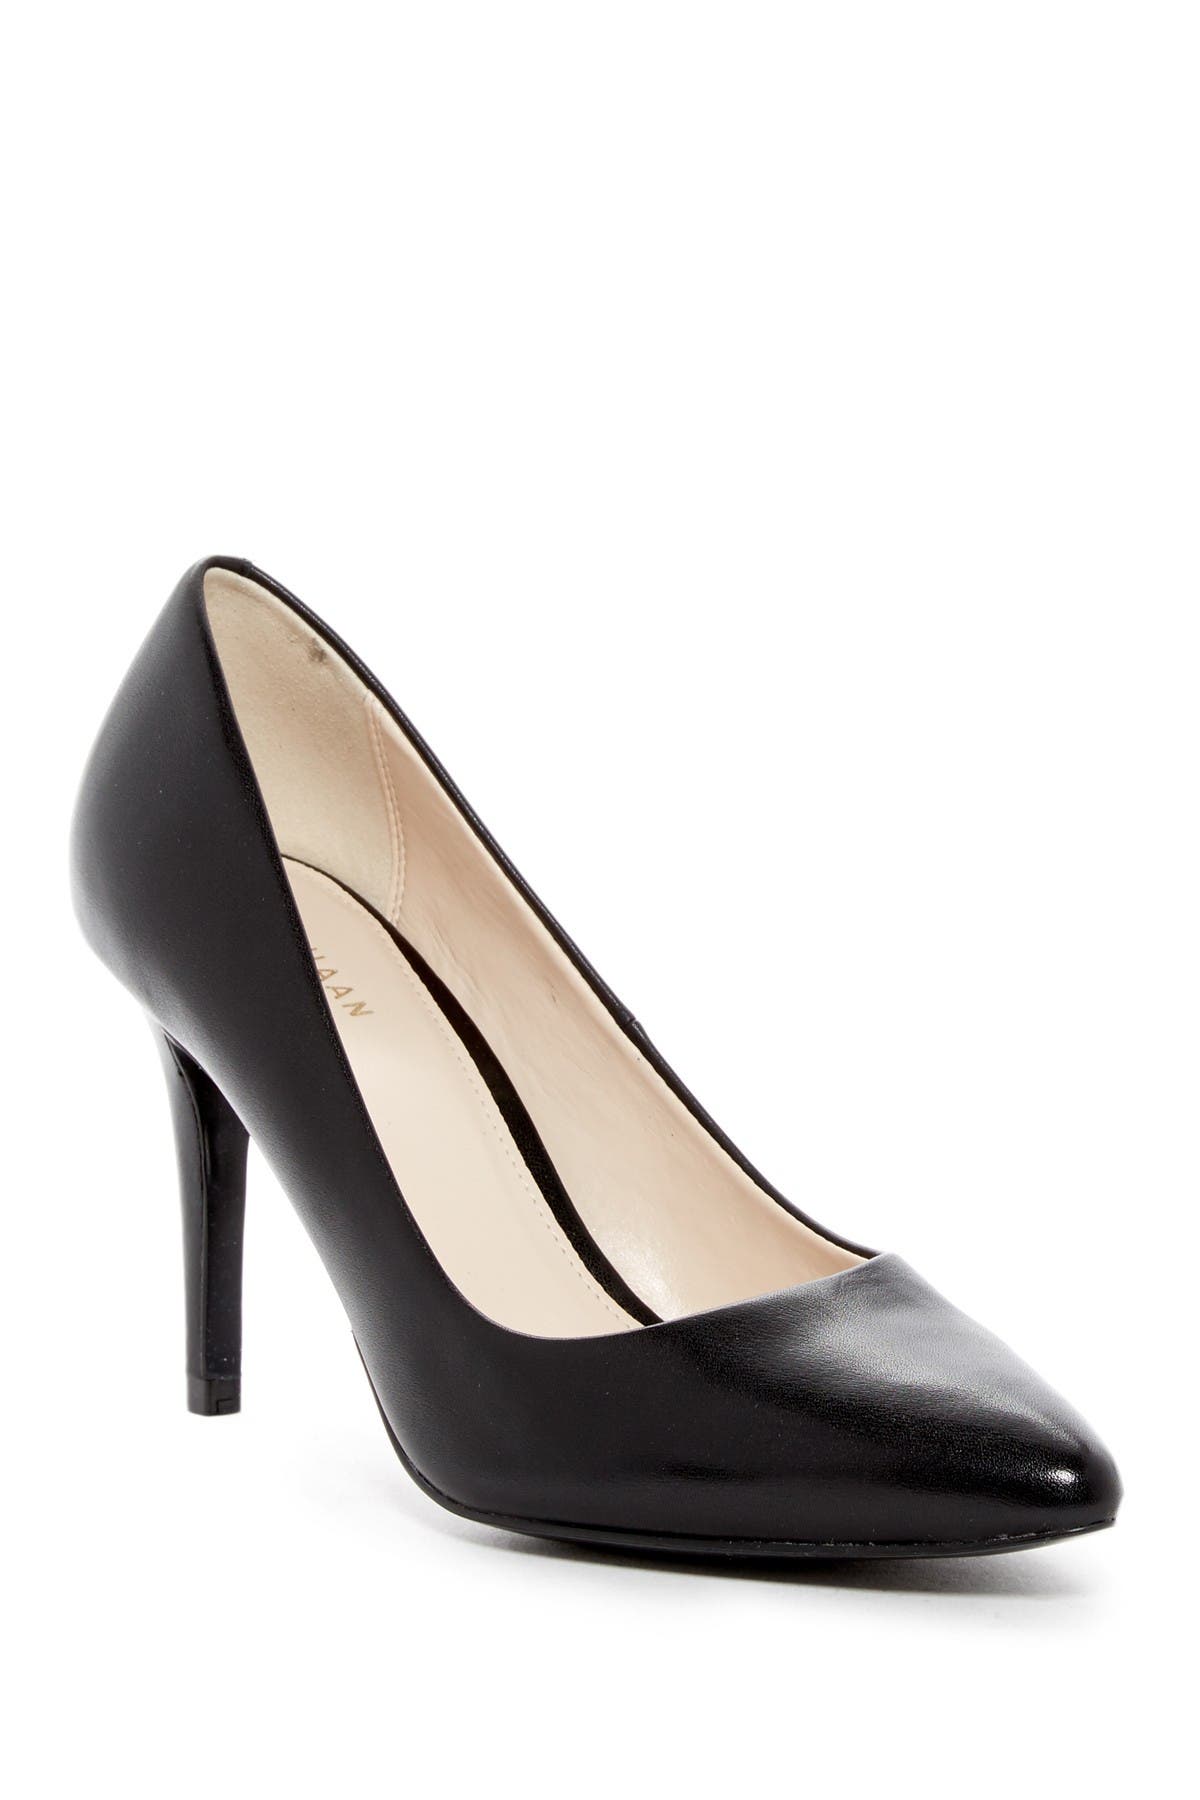 cole haan quincy leather heel